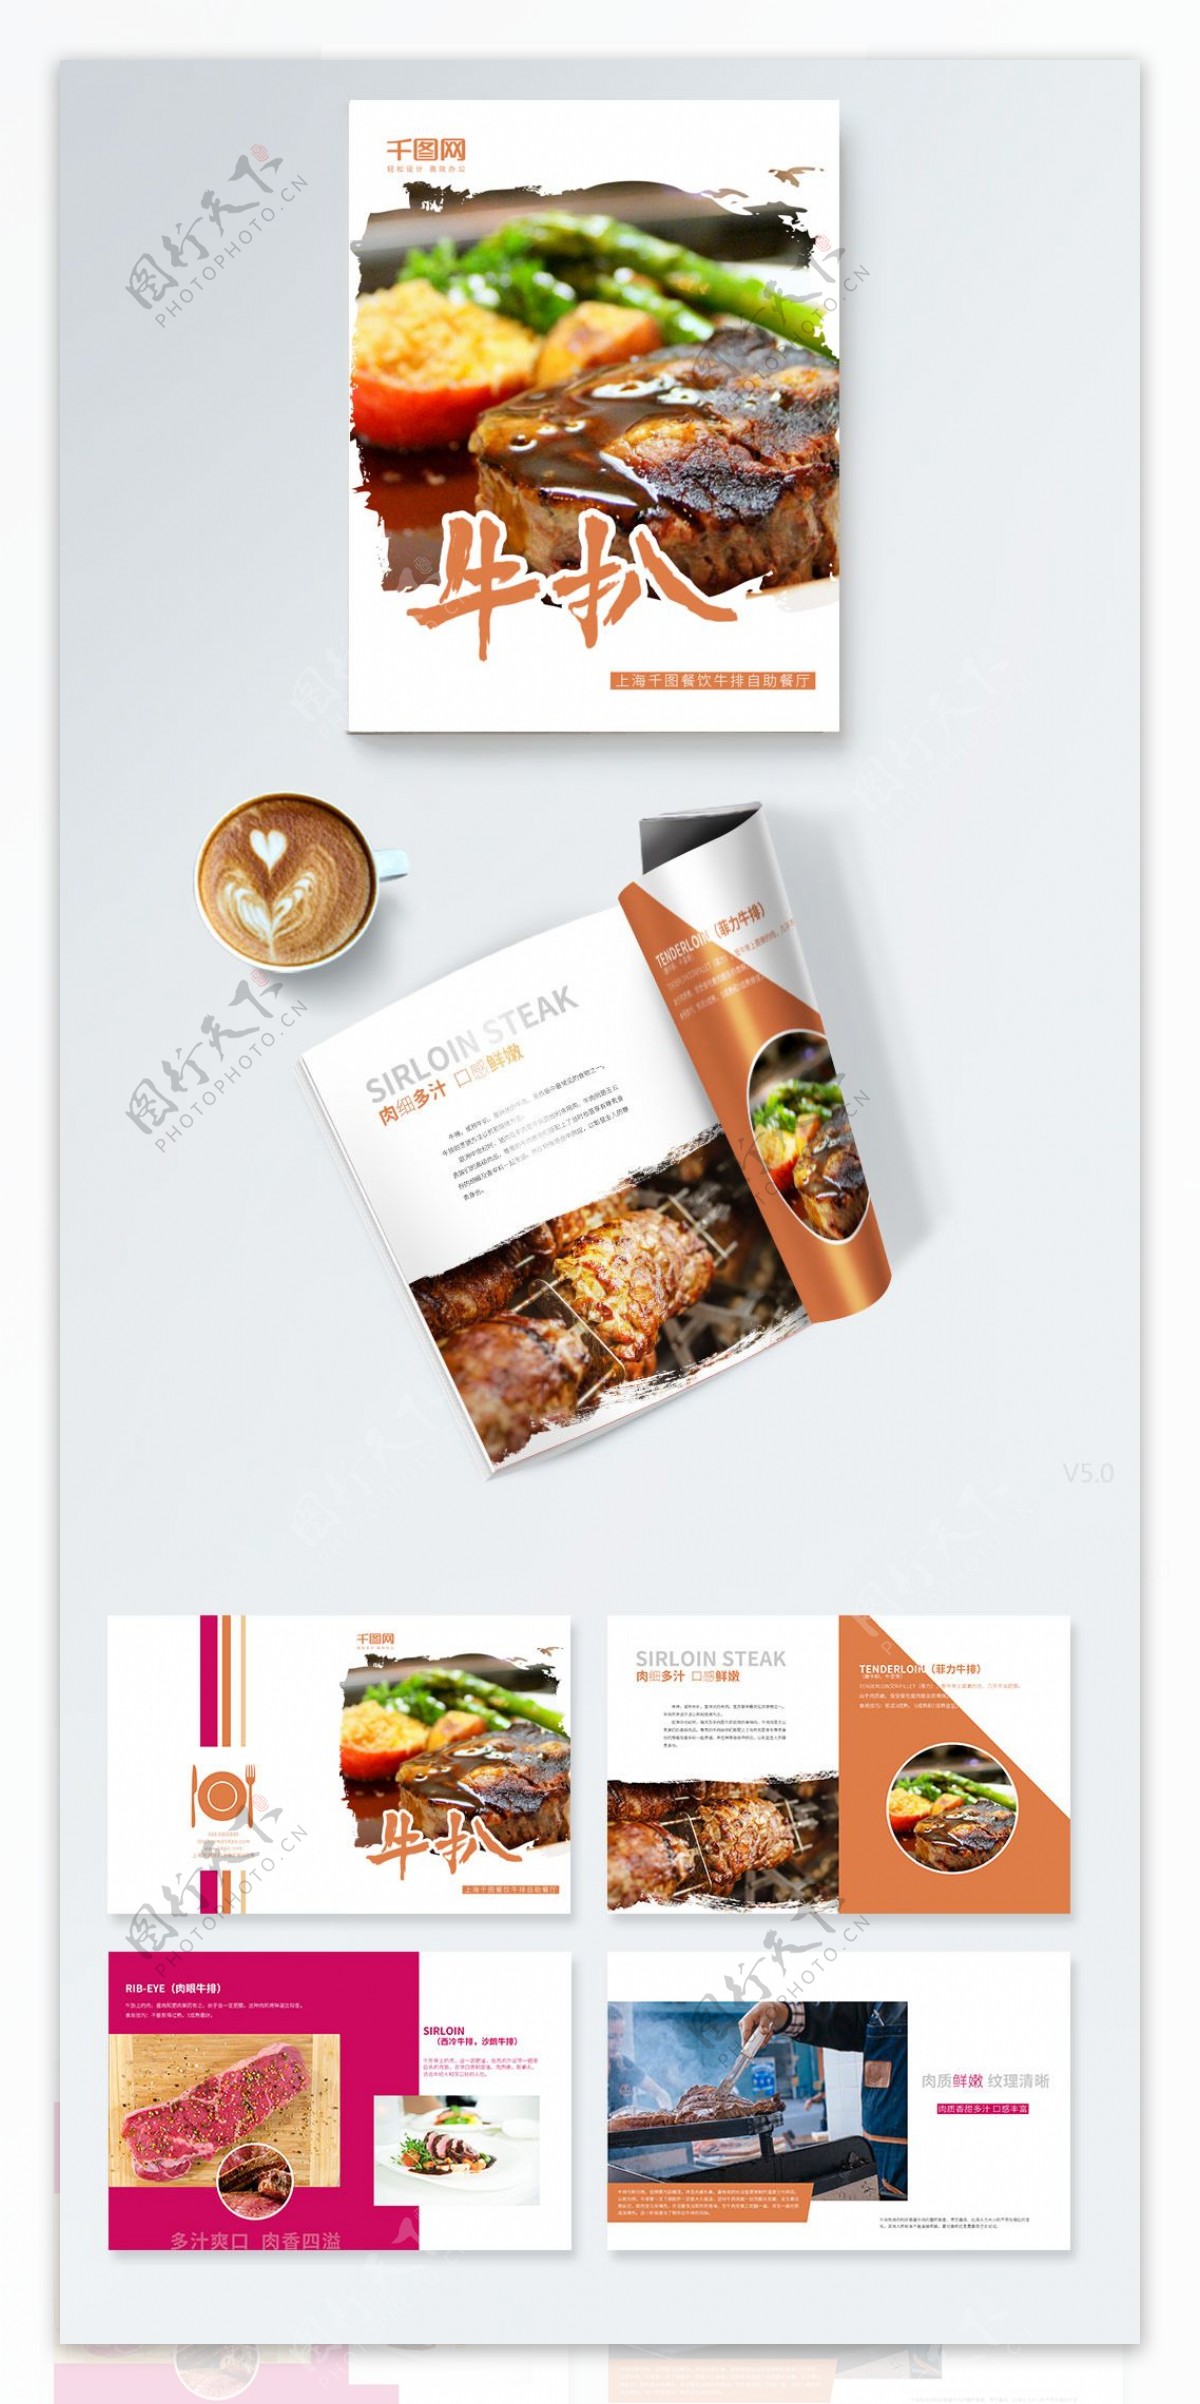 牛扒时尚餐饮宣传画册设计PSD模板